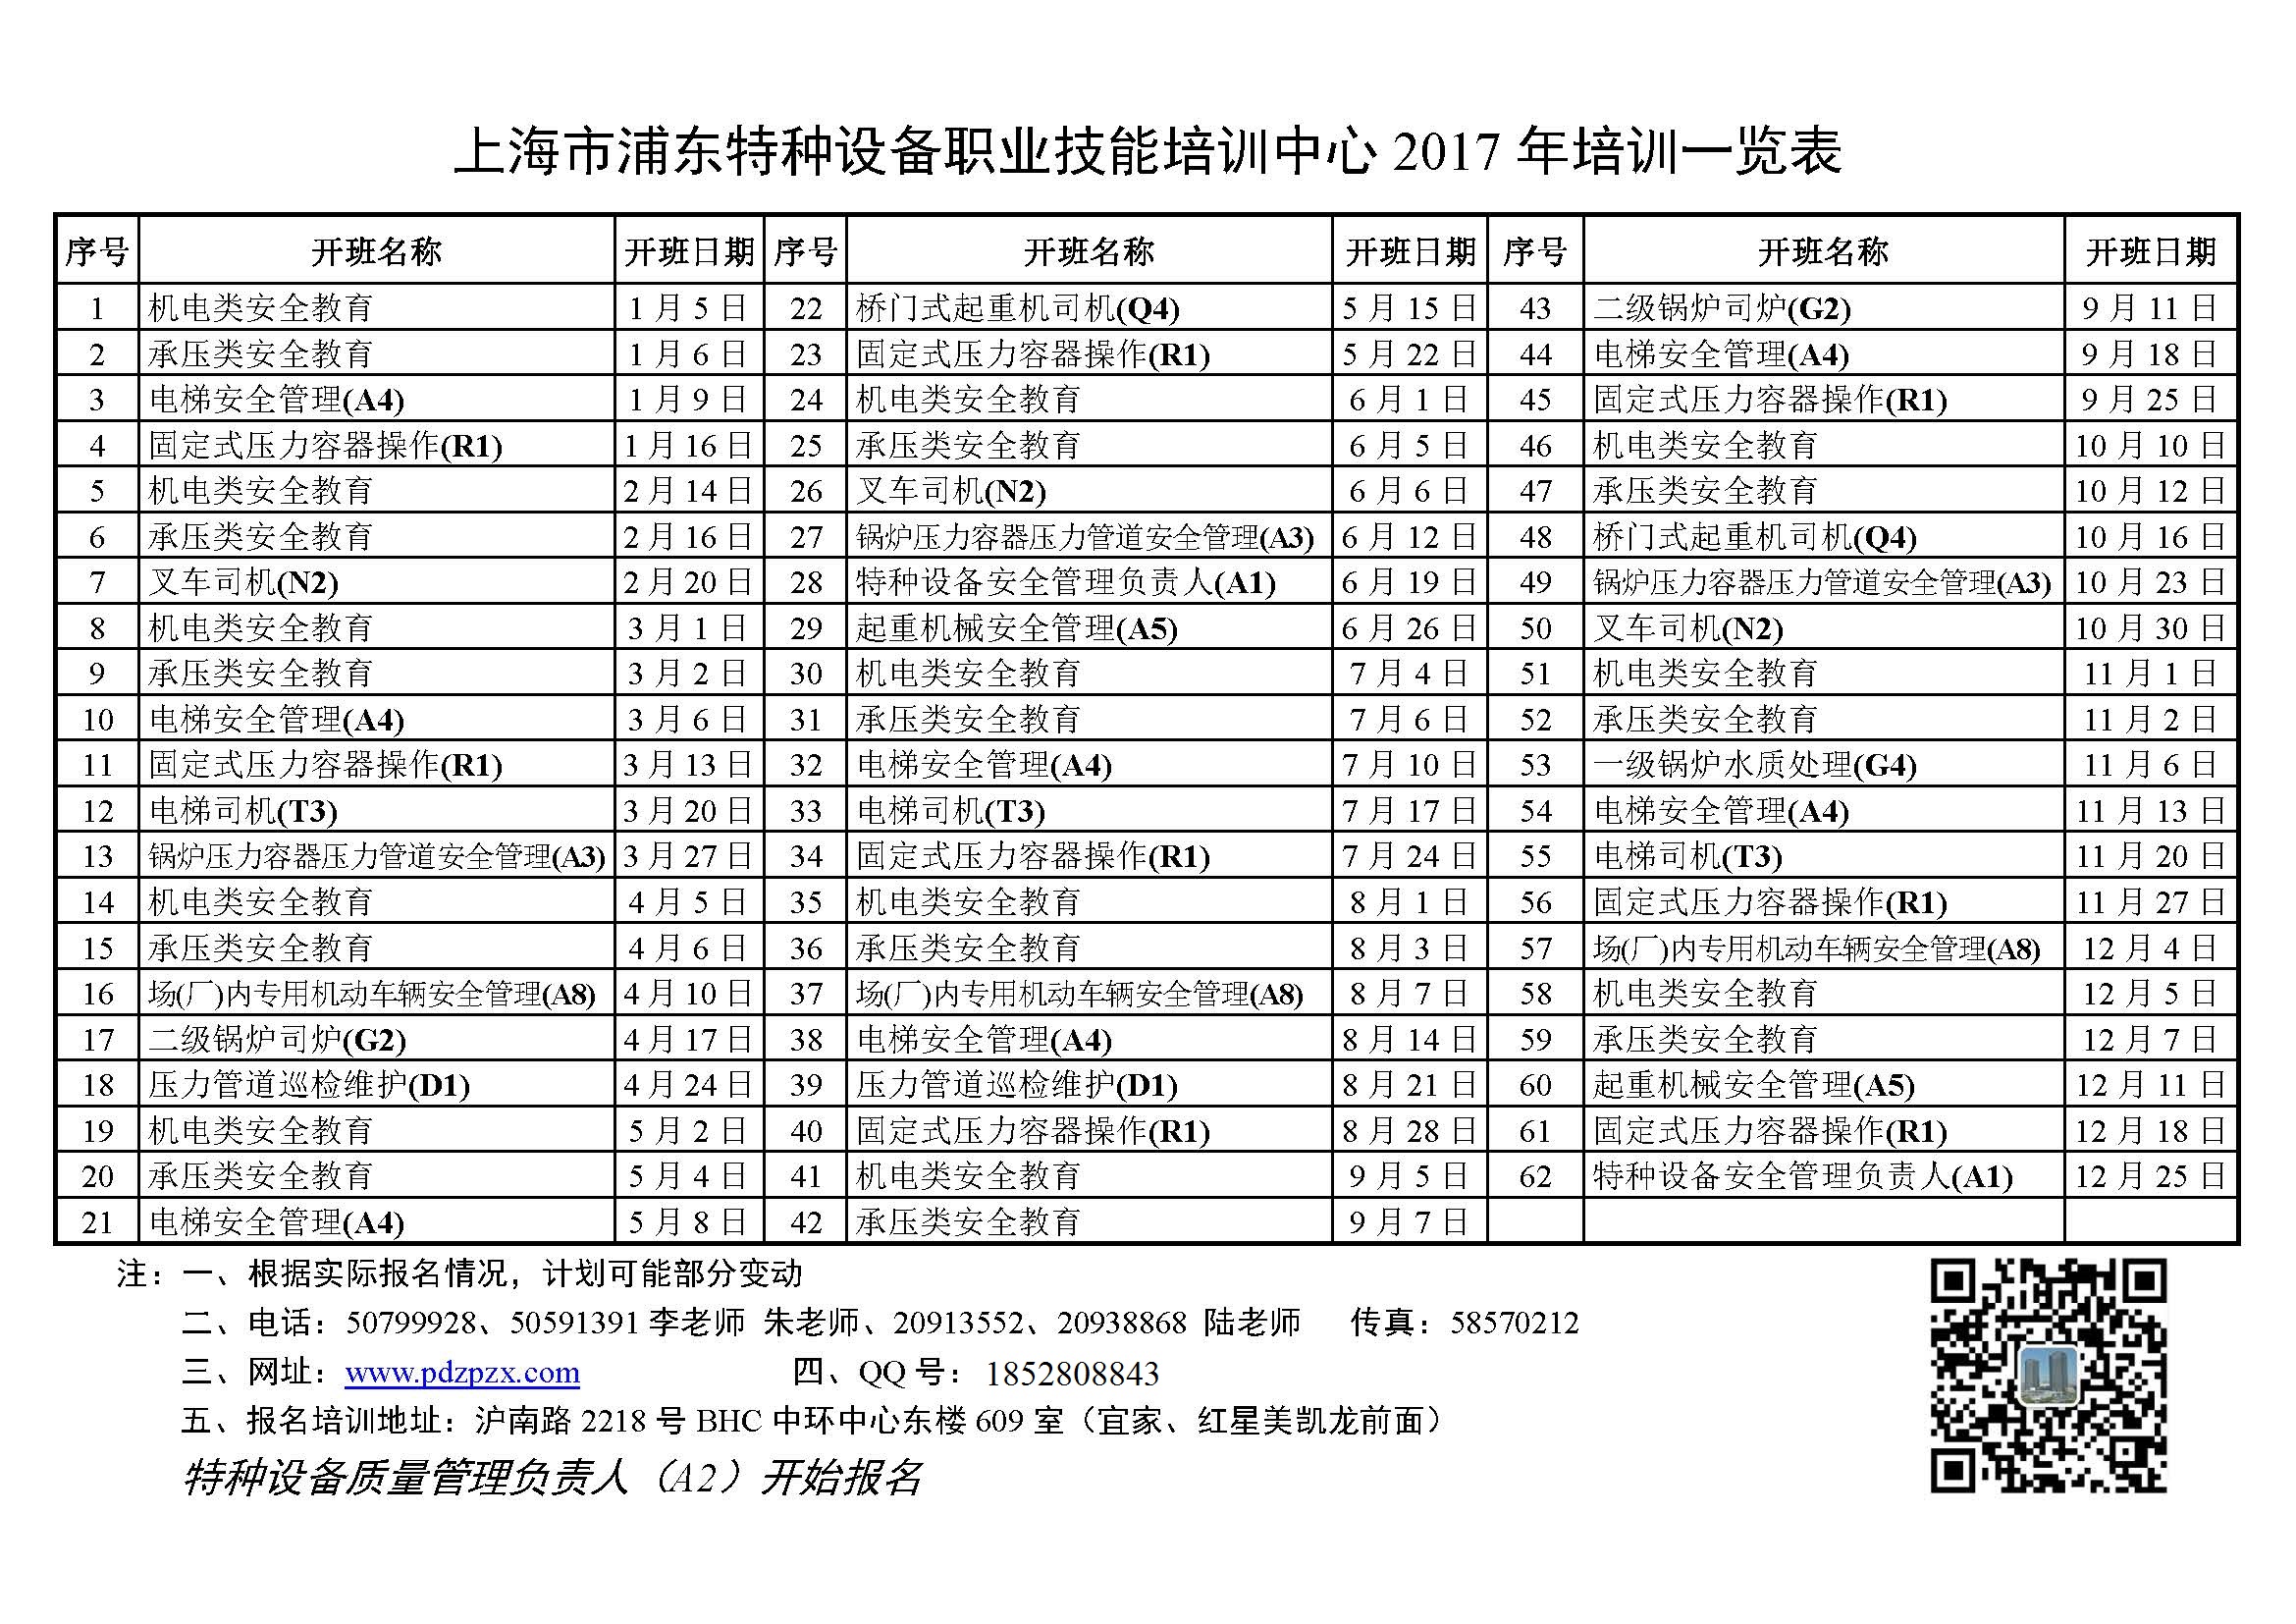 上海市浦东特种设备职业技能培训中心2017年培训一览表.jpg